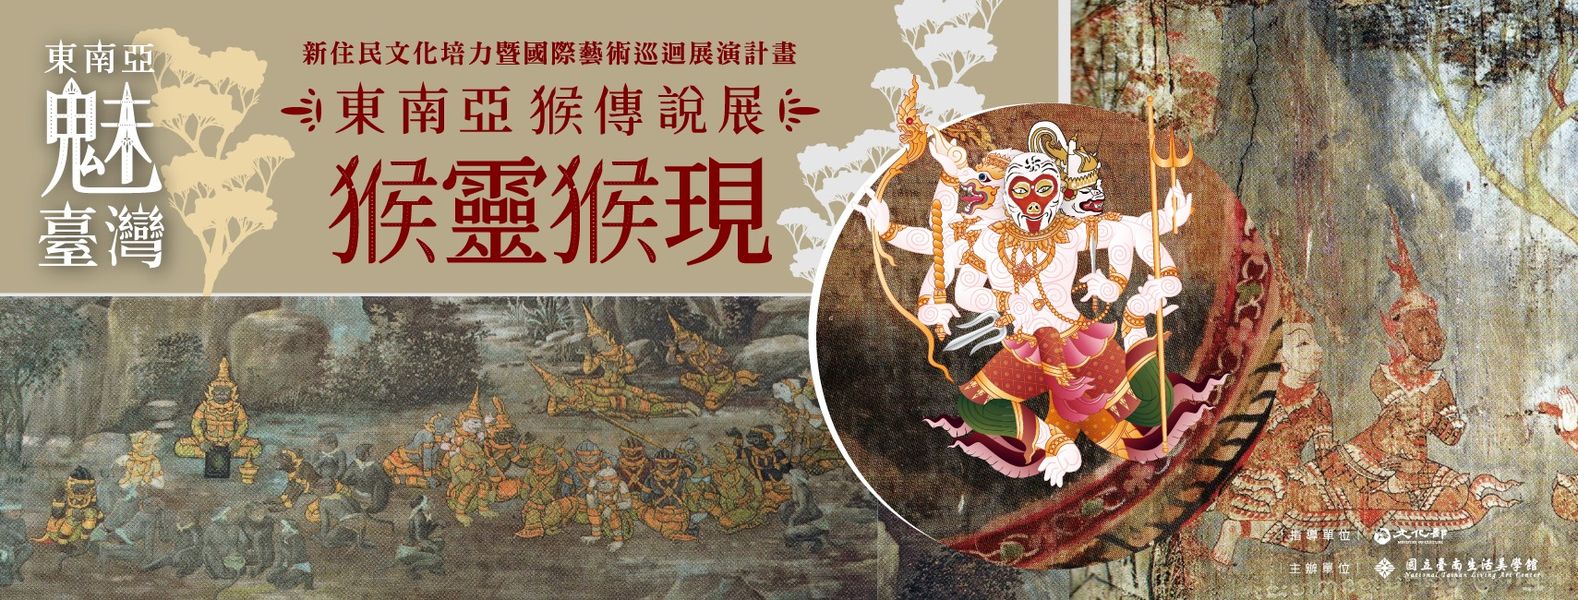 Triển lãm truyền thuyết “khỉ” Đông Nam Á tại Bảo tàng Mỹ thuật và đời sống quốc gia của Đài Nam. (Nguồn ảnh: Facebook “Dự án Triển lãm lưu diễn nghệ thuật quốc tế và bồi dưỡng văn hóa di dân mới”)